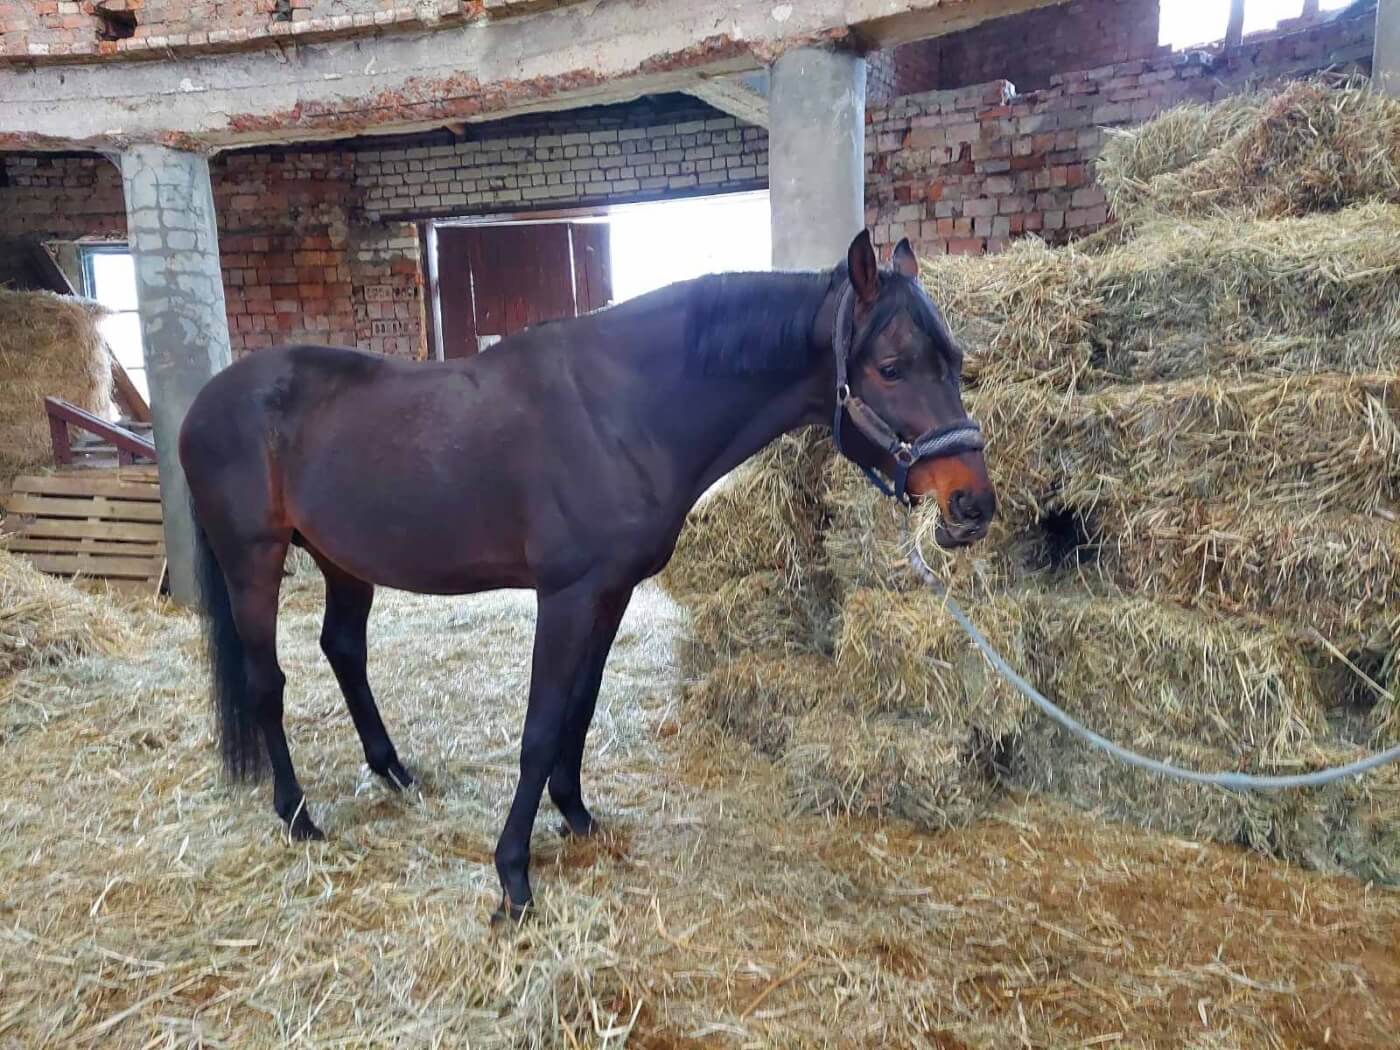 2023 02 27 pferdehof ukraine horses How You Can Help Animals in Ukraine